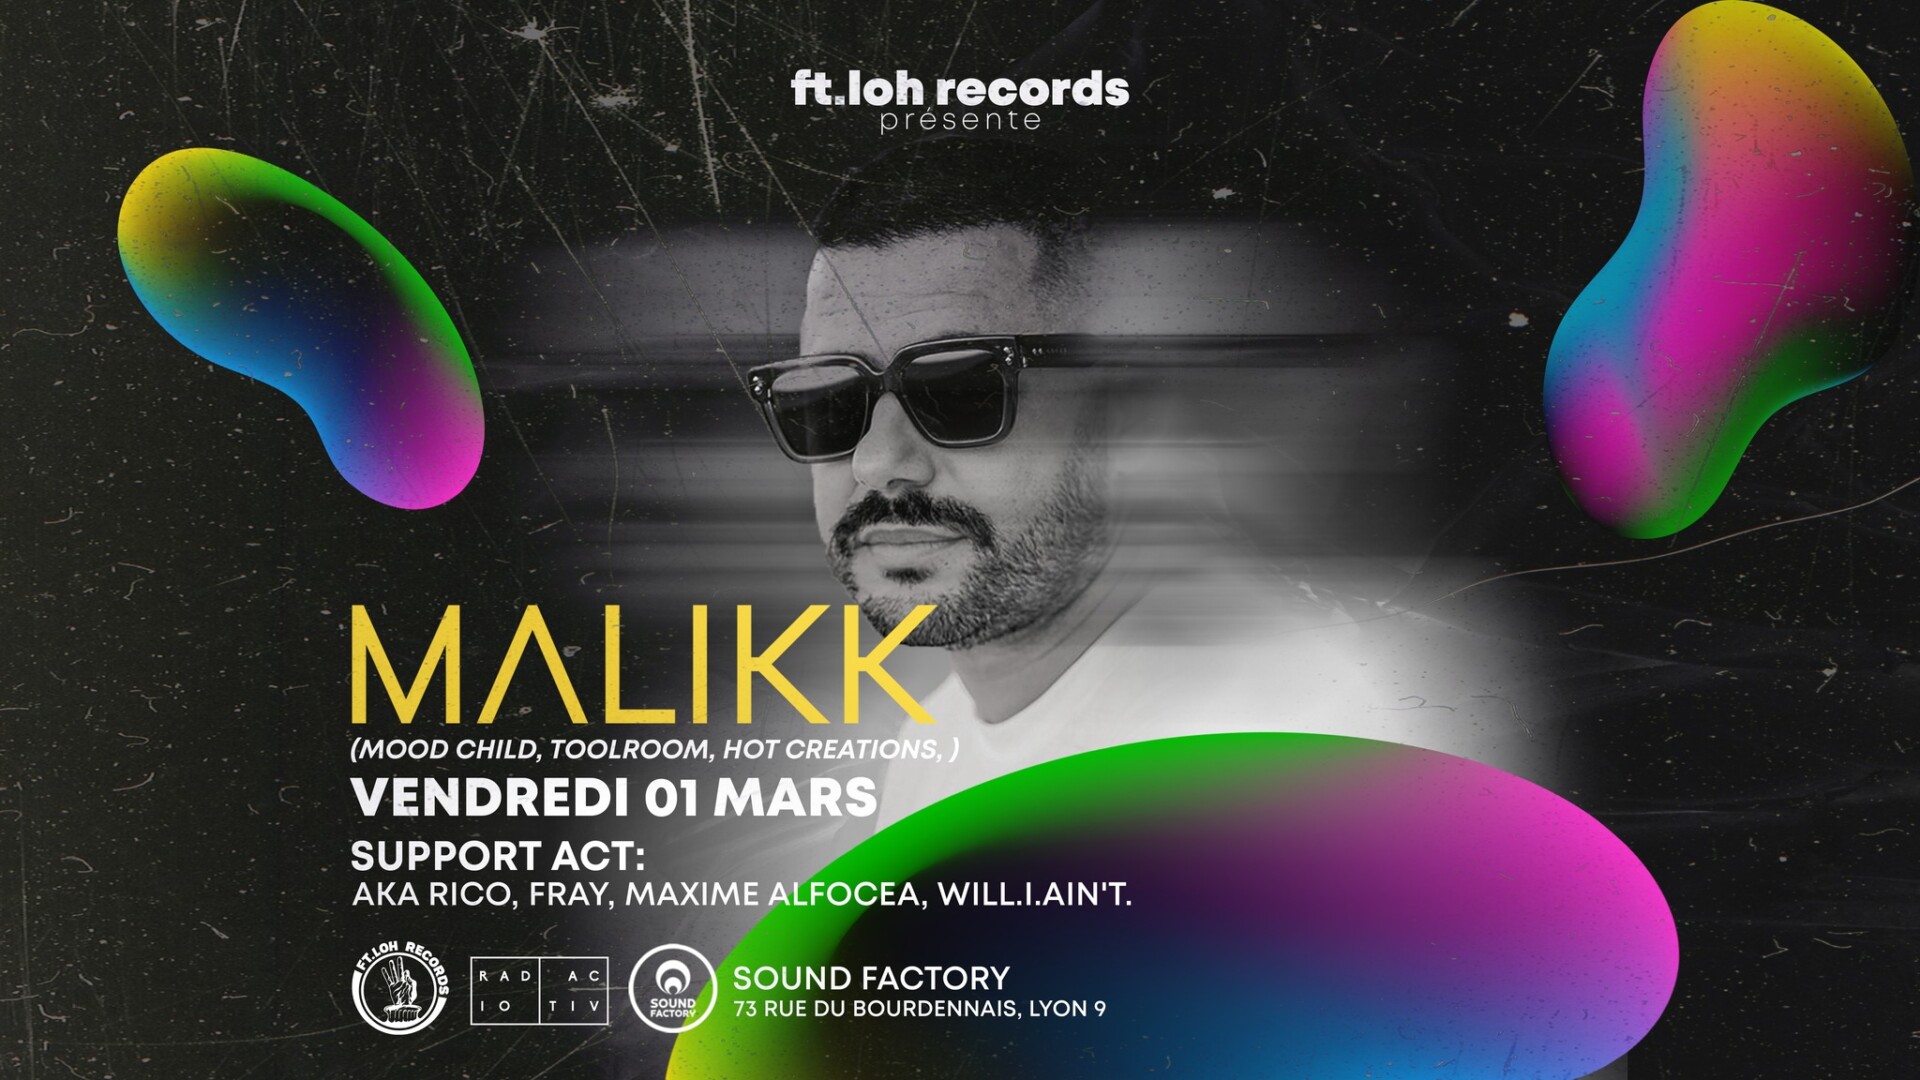 Ft.loh Records invite MALIKK